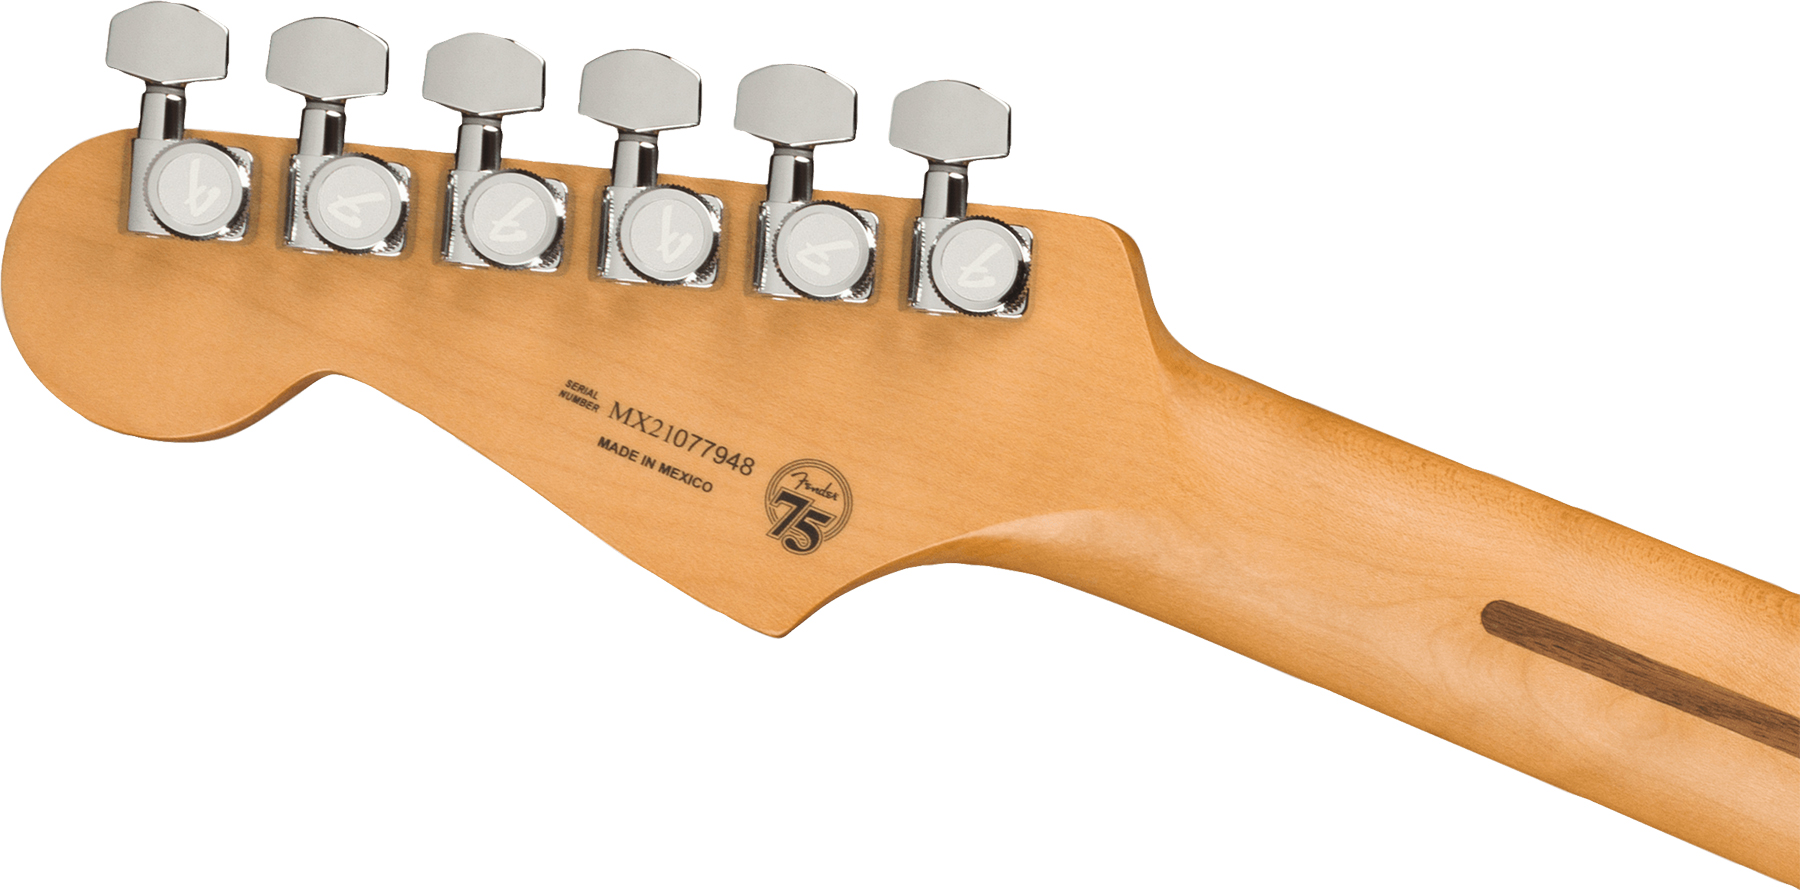 Fender Strat Player Plus Mex 3s Trem Pf - Opal Spark - Guitare Électrique Forme Str - Variation 3